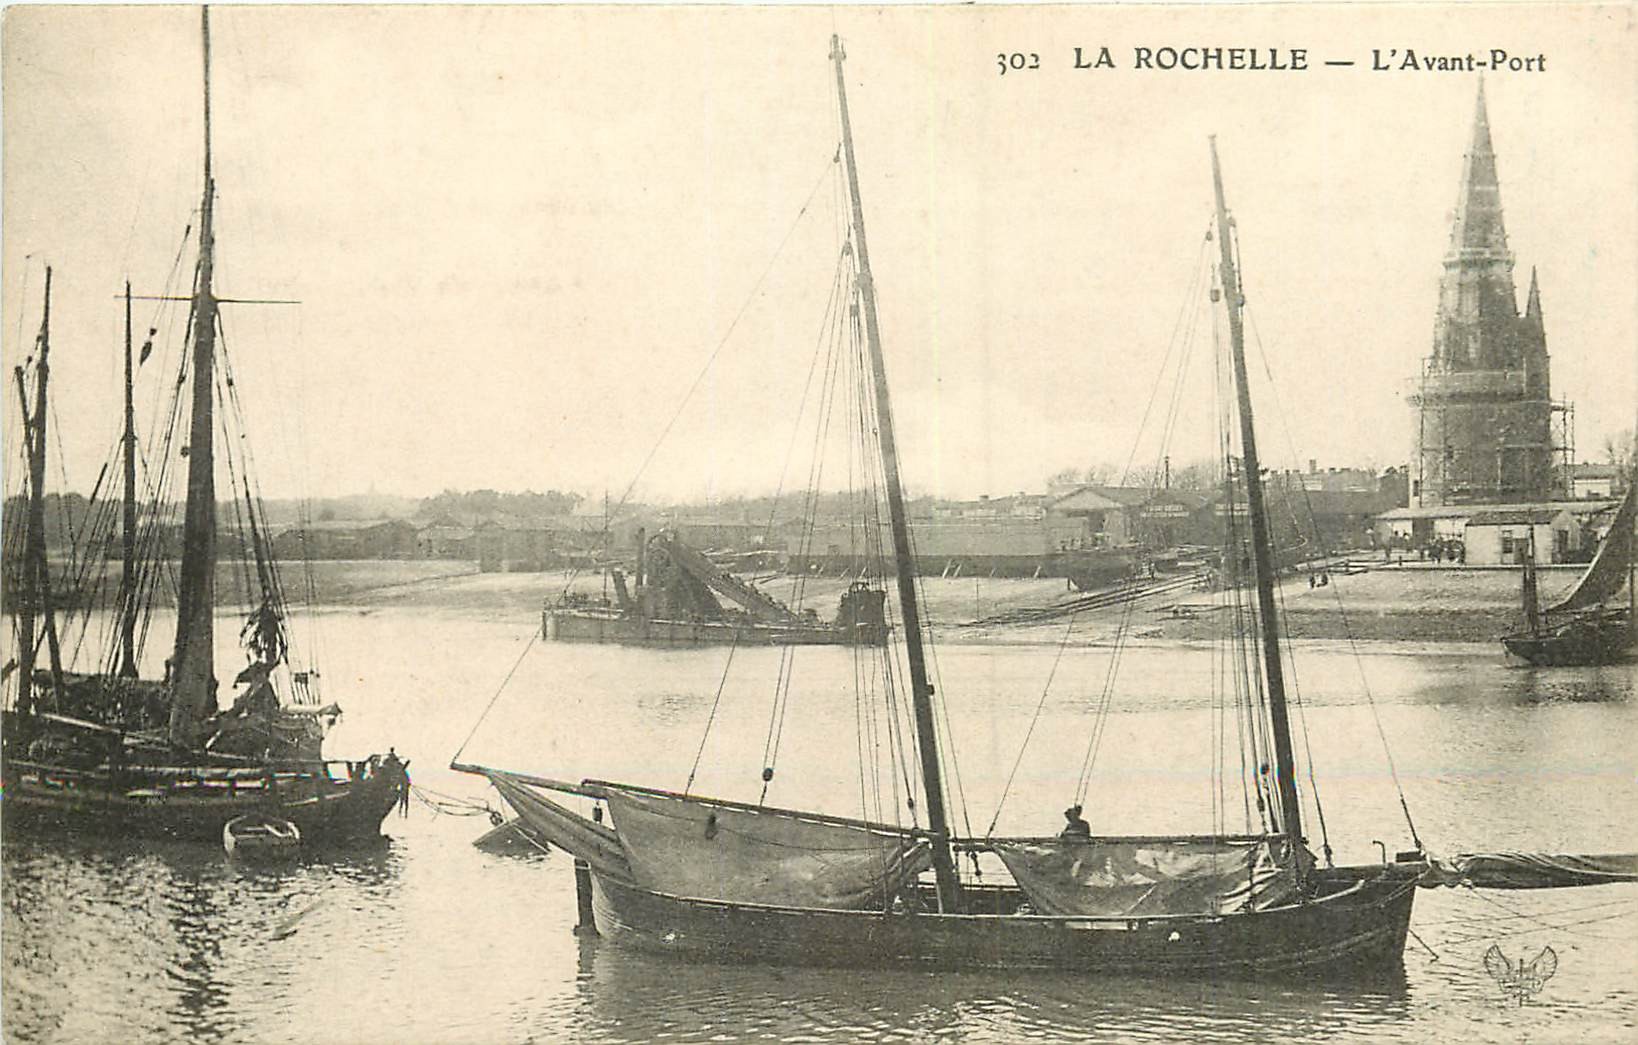 WW 17 LA ROCHELLE. Barques et Bateaux de Pêche dans l'Avant-Port